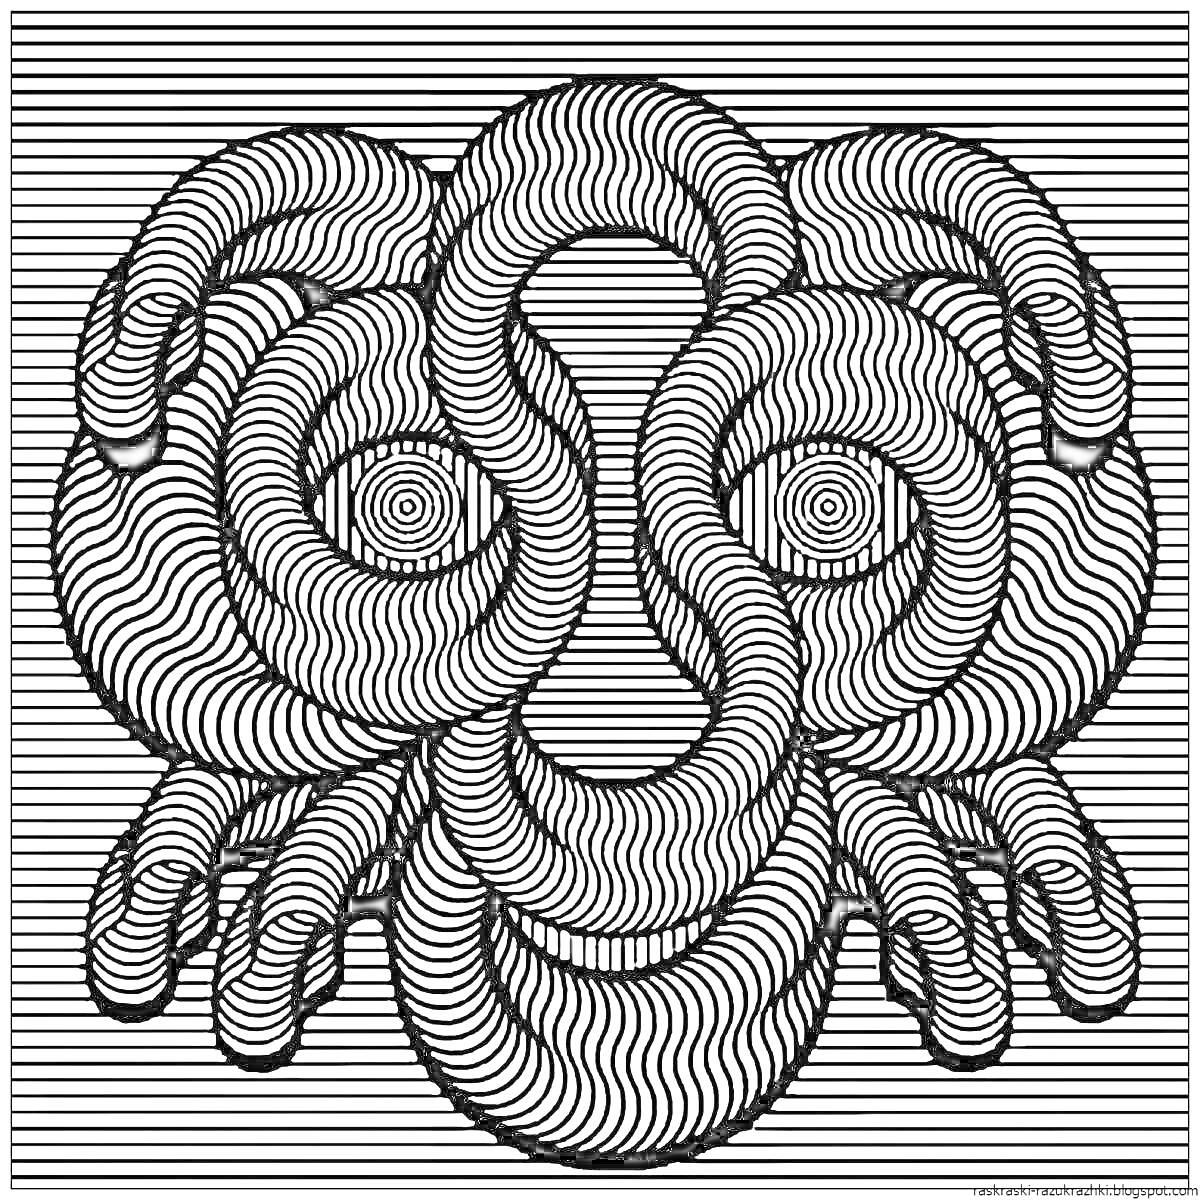 Раскраска Спиральный узор на абстрактной картине с изображением лица